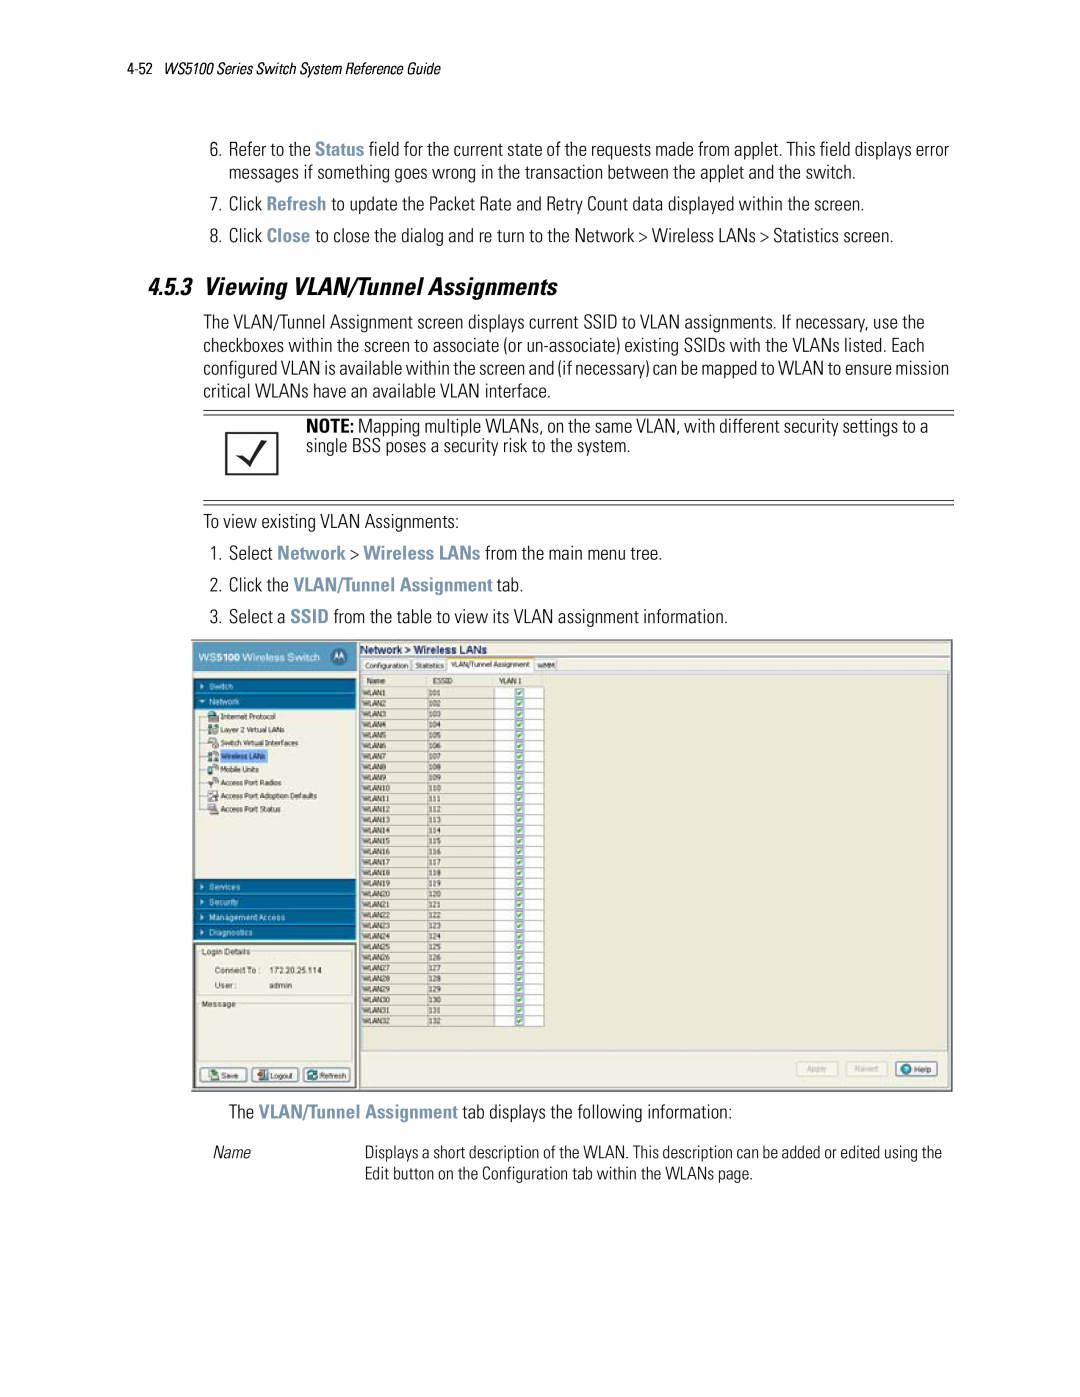 Motorola WS5100 manual 4.5.3Viewing VLAN/Tunnel Assignments, Click the VLAN/Tunnel Assignment tab 